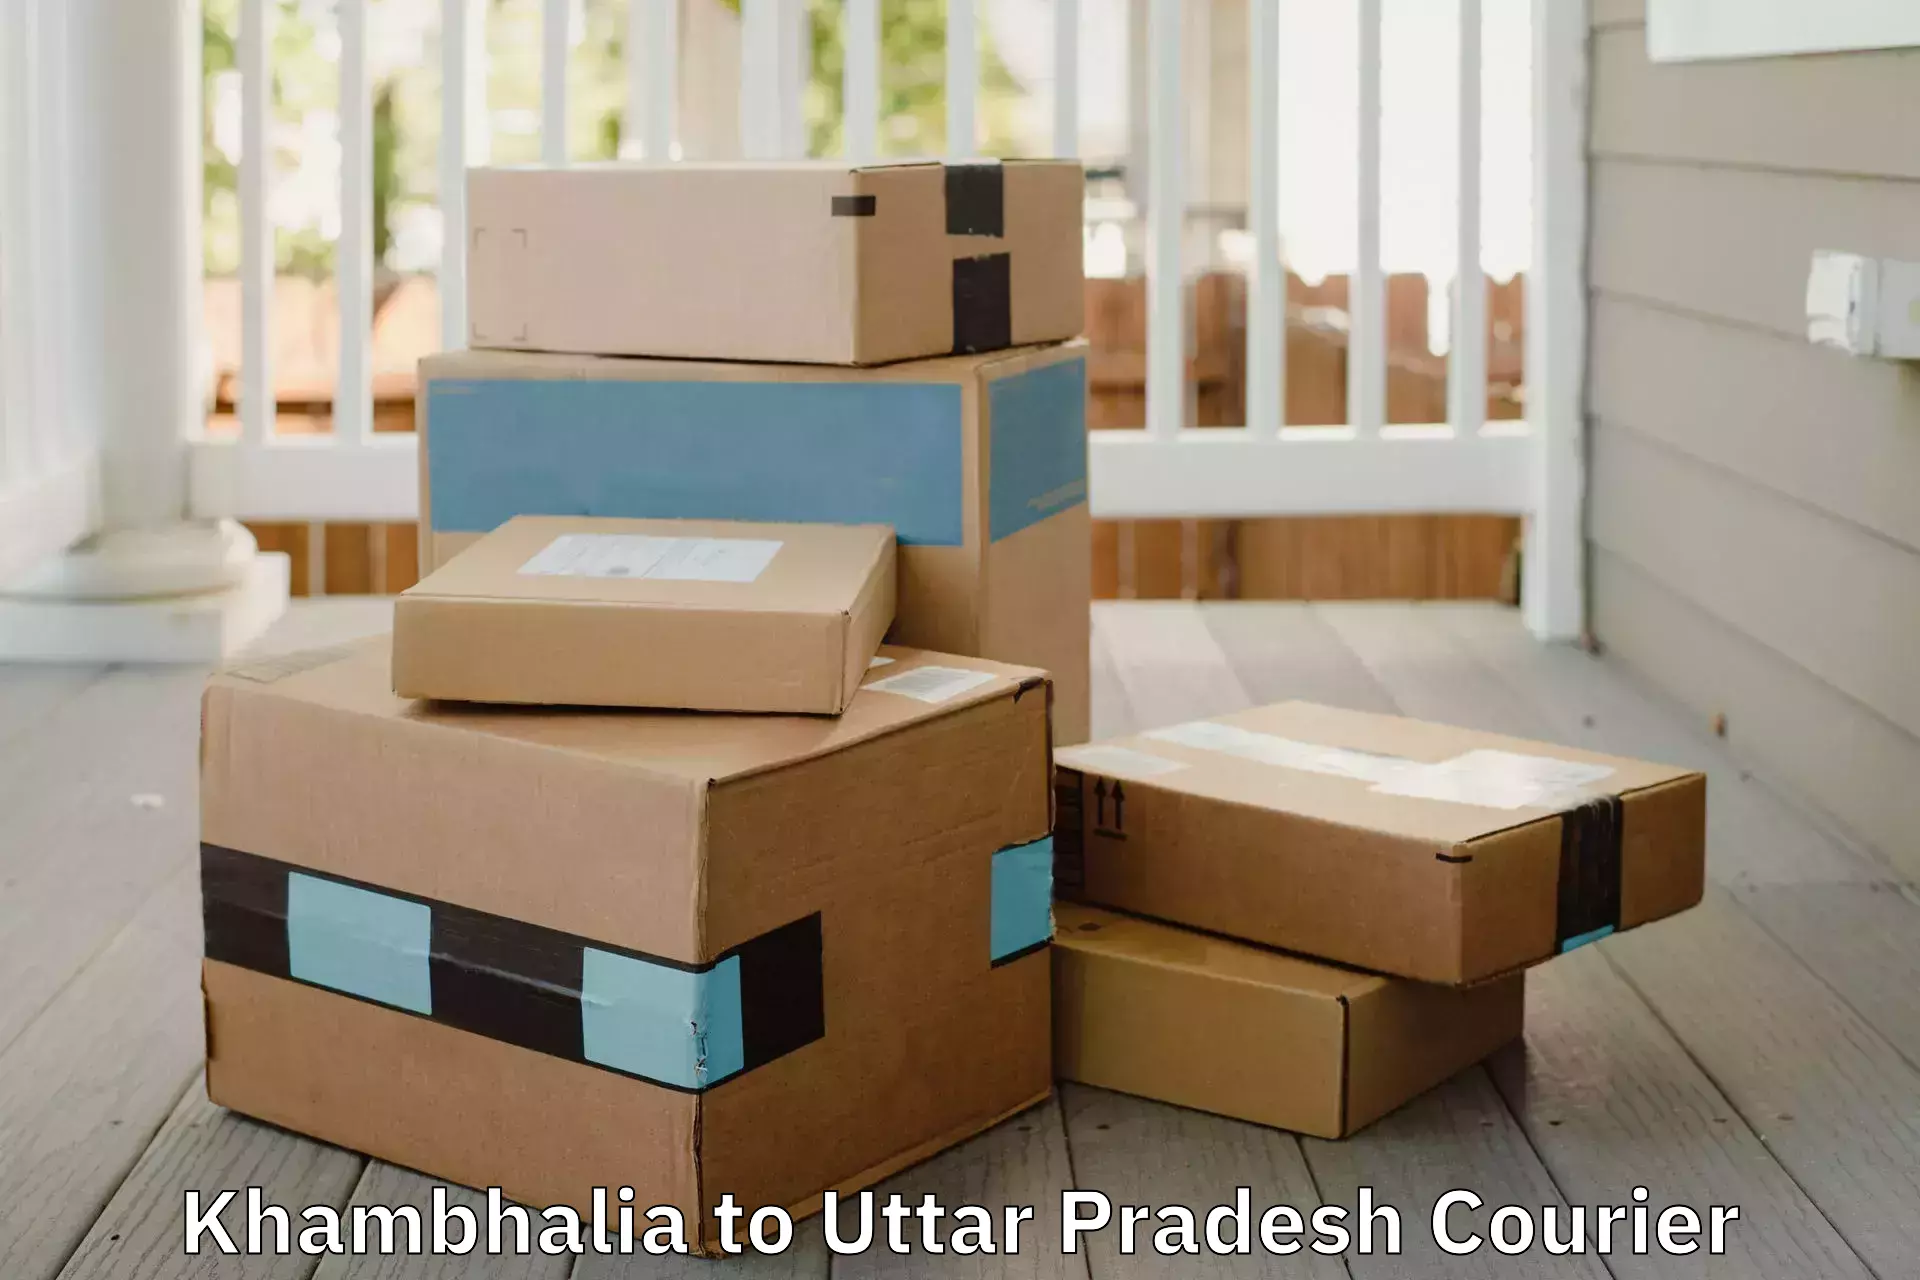 Cost-effective moving options Khambhalia to Basti